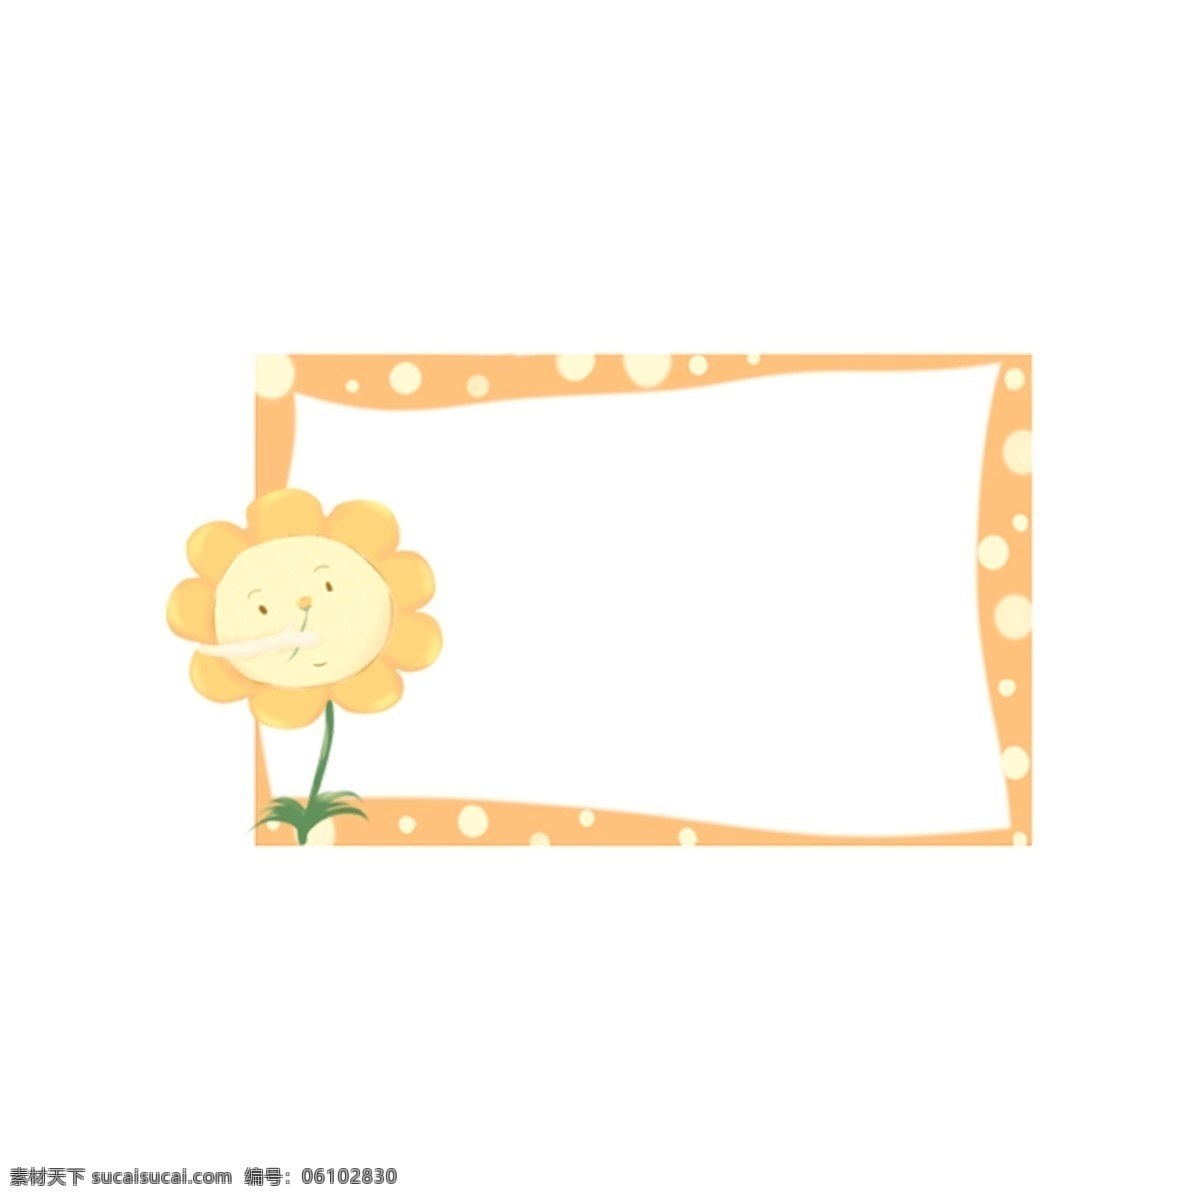 爱马 卡龙 色 波 点 边框 橙色 可爱边框 黄色边框 波点边框 手抄报 对话框 展示栏 花朵